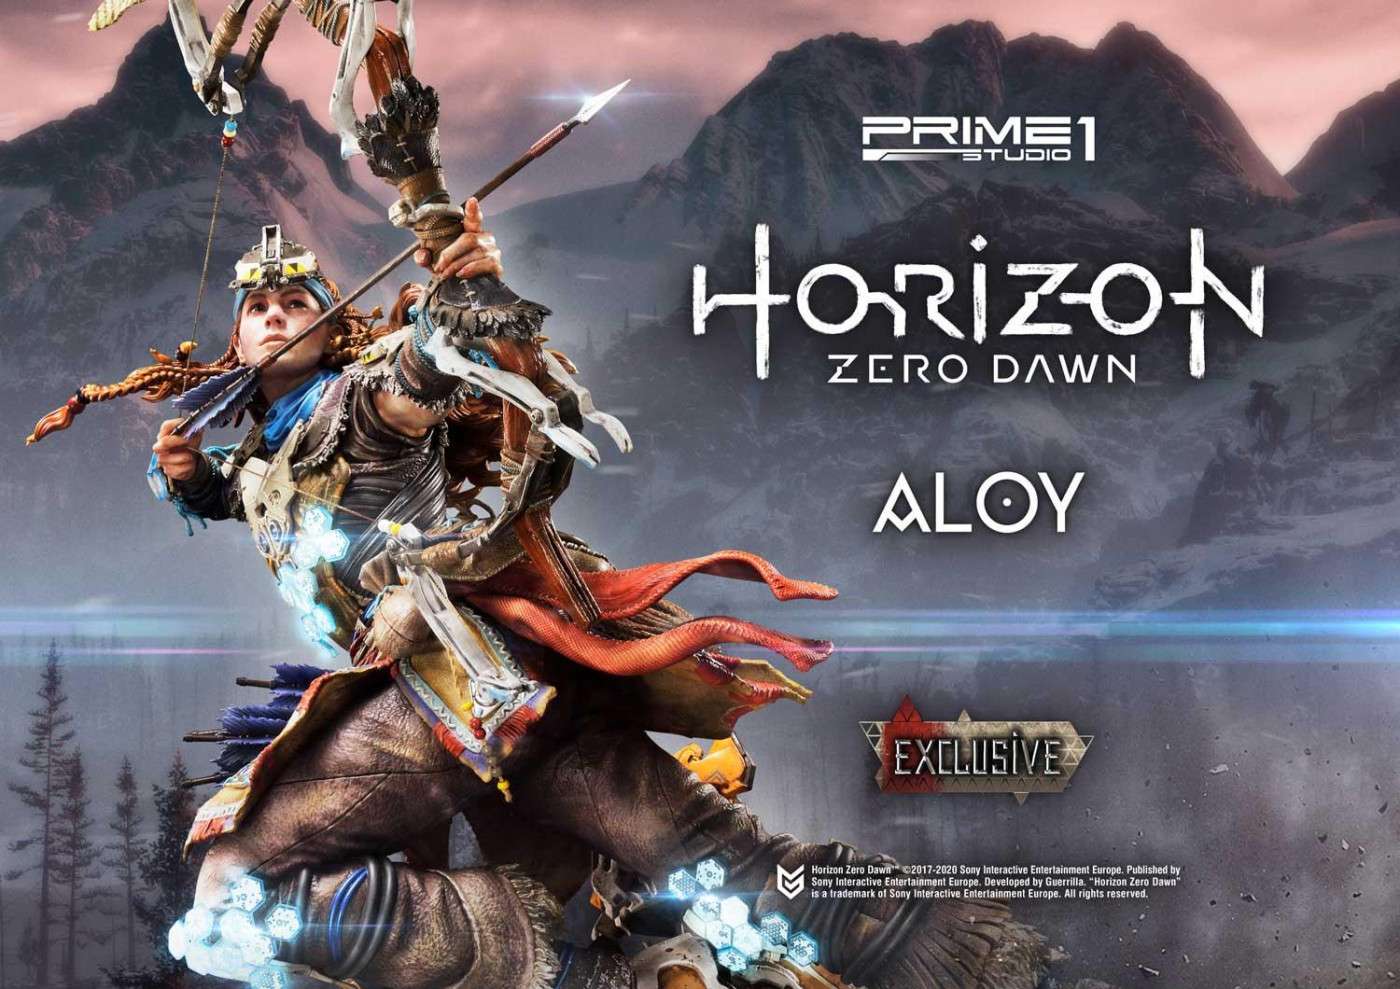 Horizon Zero Dawn recibirá dos figuras de Prime 1 Studio